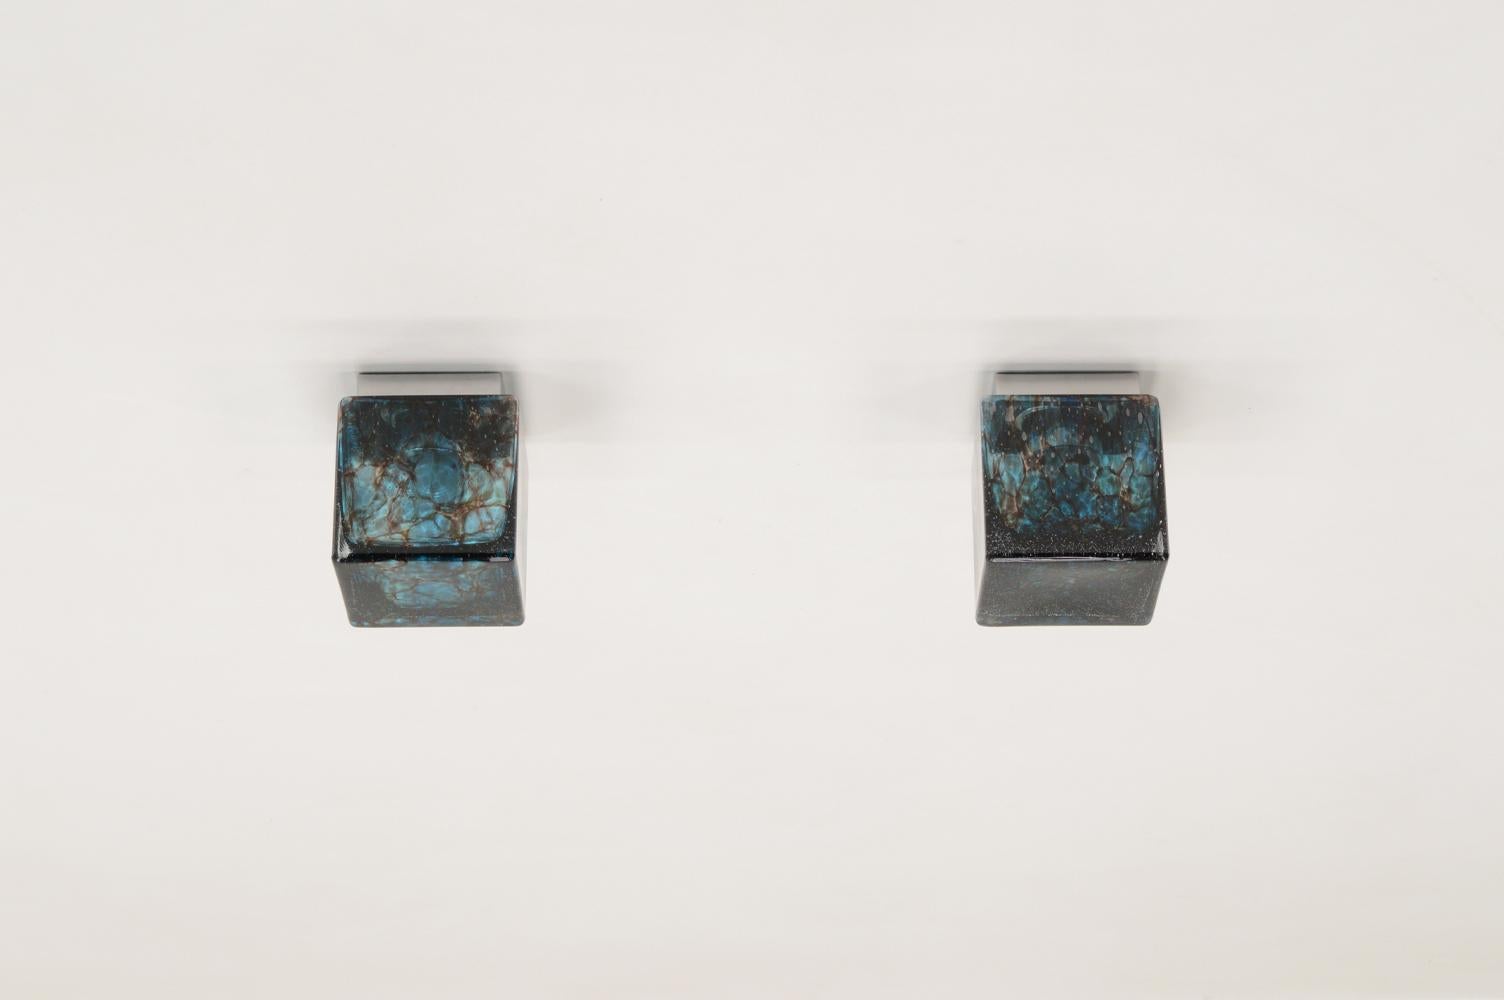 Ensemble de 2 plafonniers encastrés Cube de Glashütte Limburg, Allemagne, années 1970. Des cubes de verre bleu épais avec des bulles et des veines foncées. Monture chromée pouvant accueillir une ampoule E27. Il s'agit d'un ensemble rare. Marqué du